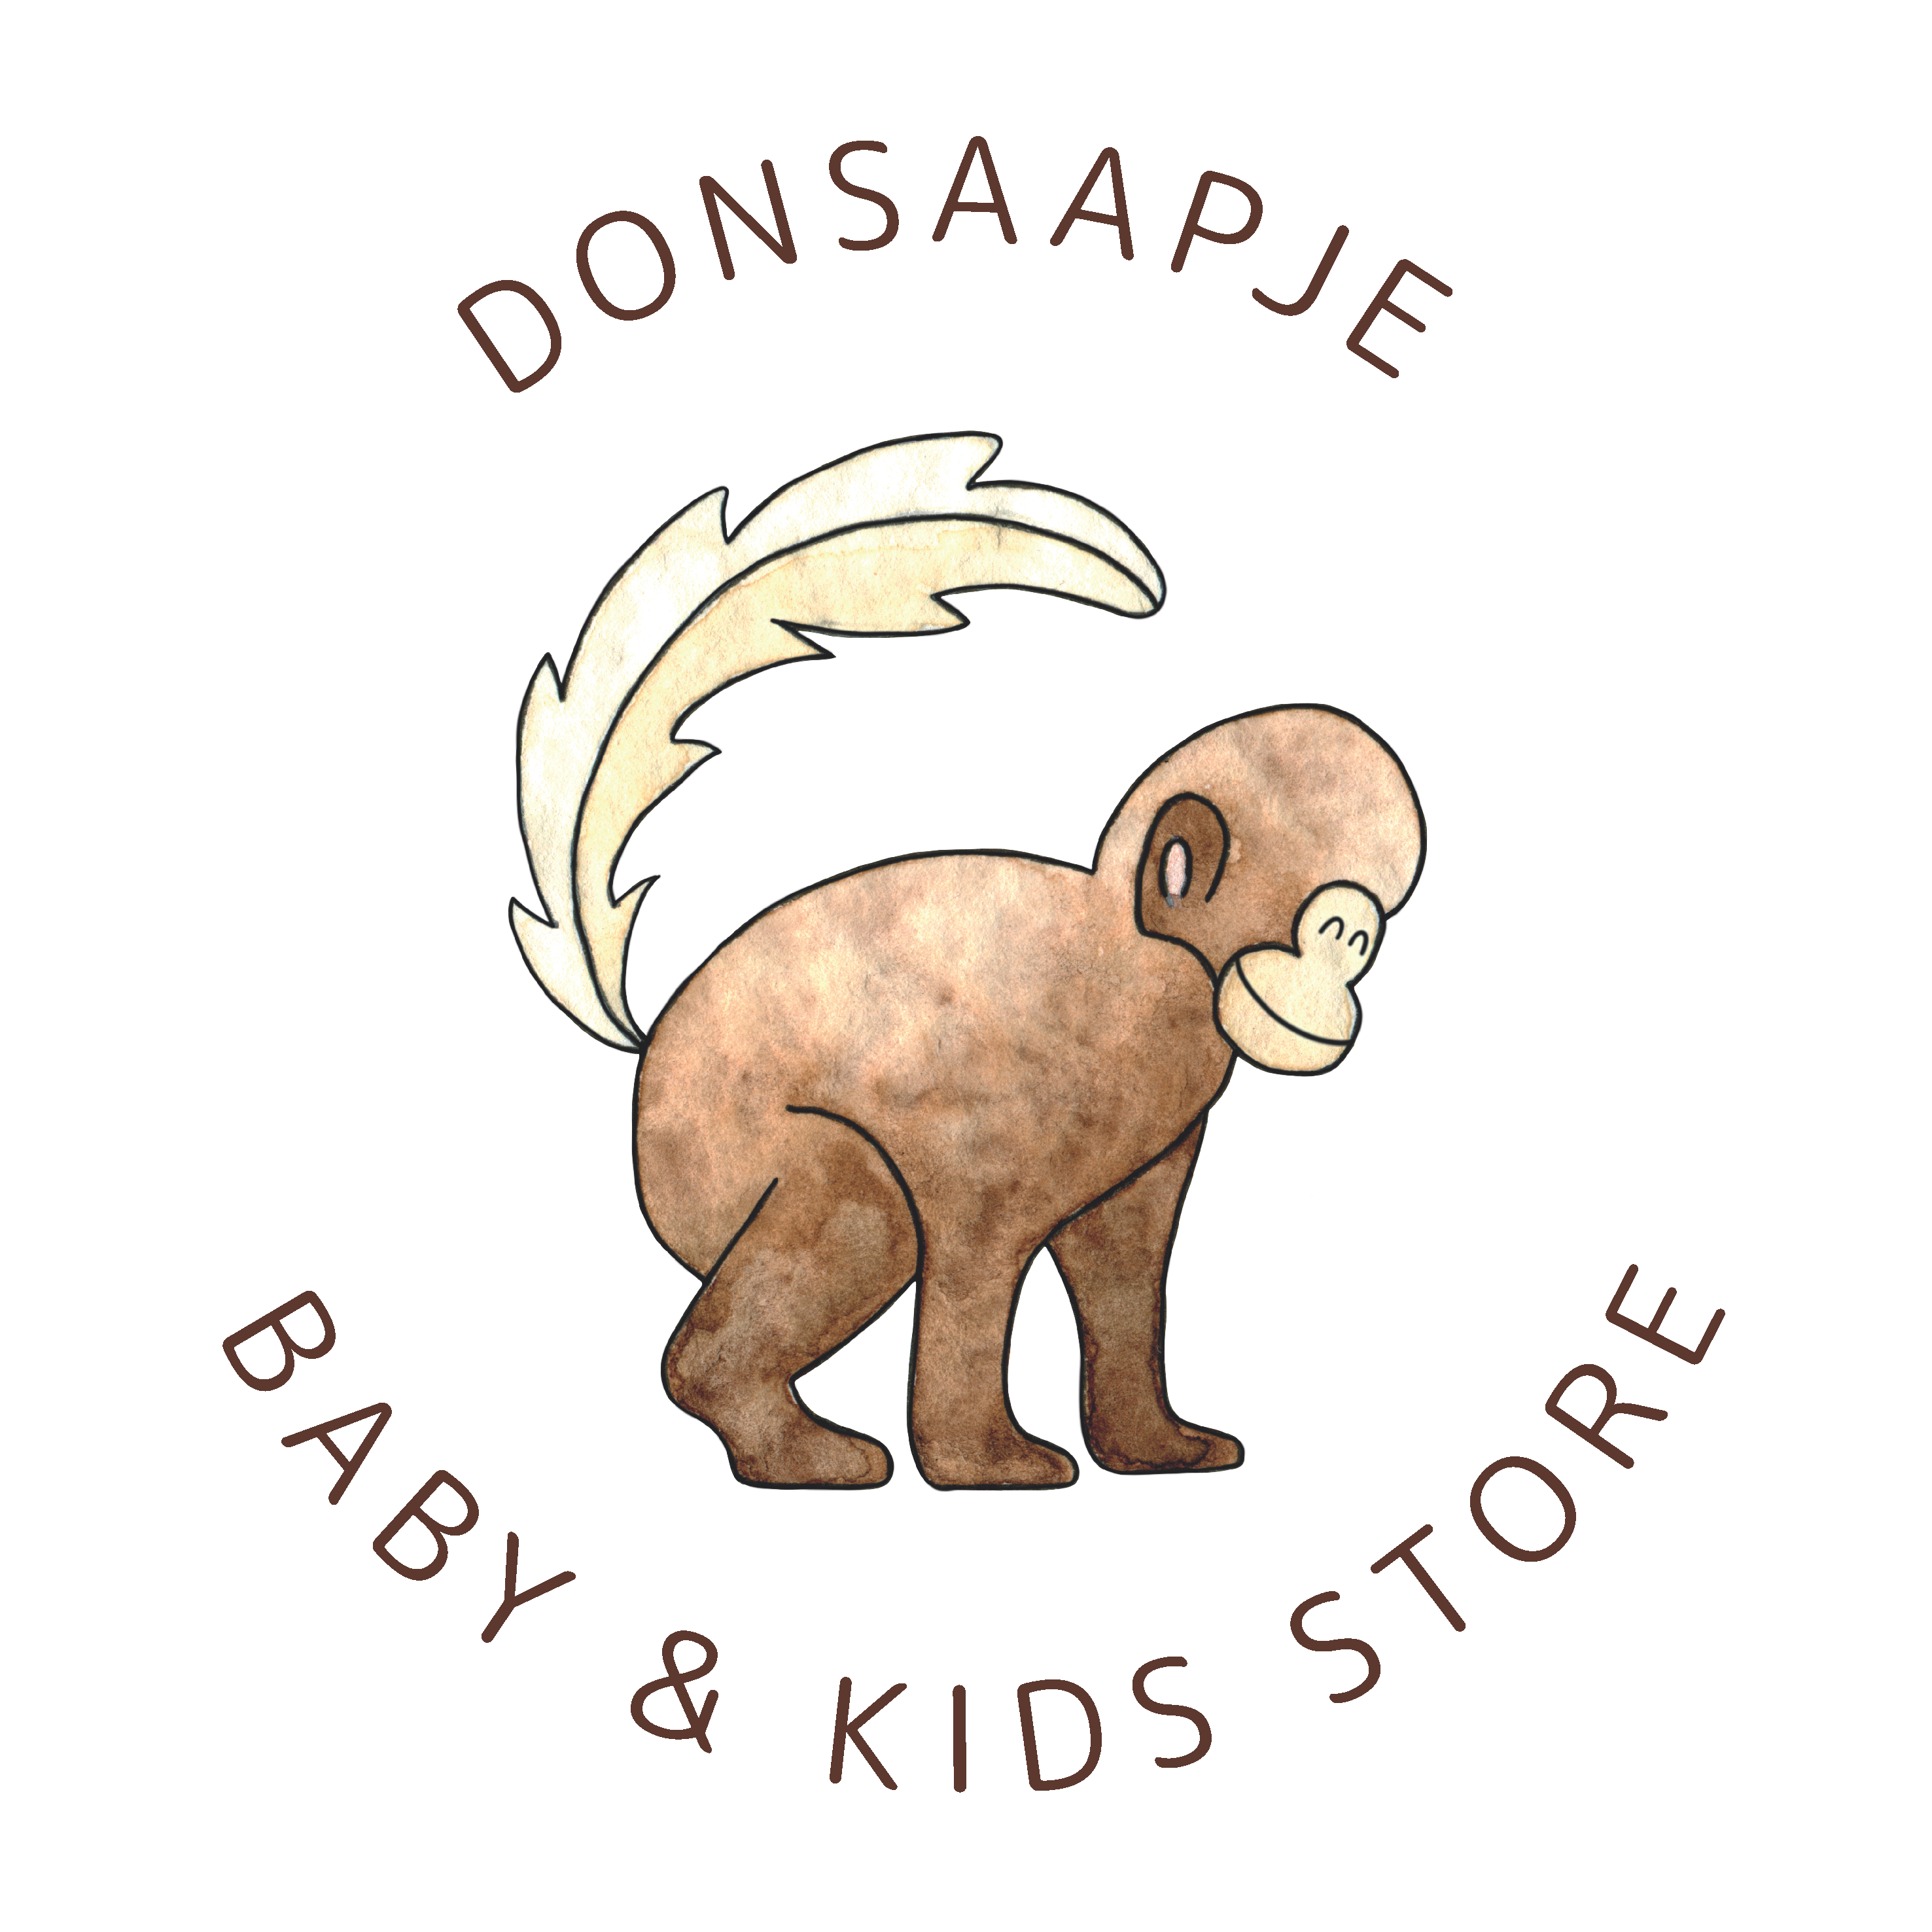 Donsaapje, baby & kids store